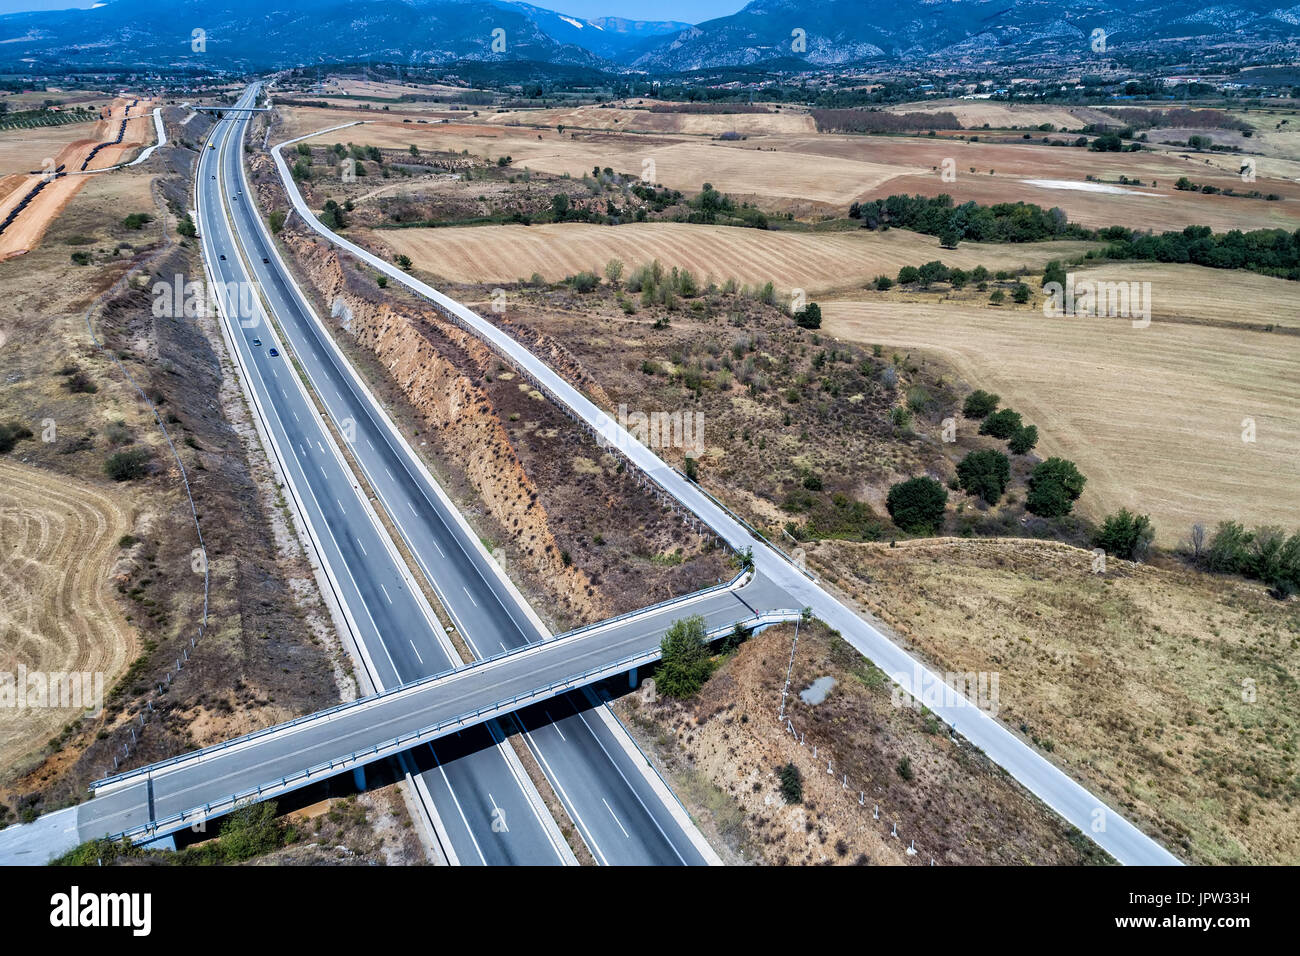 Vue aérienne de la route Egnatia Odos (national) qui traverse la Grèce de l'Évros à Igoumenitsa Banque D'Images